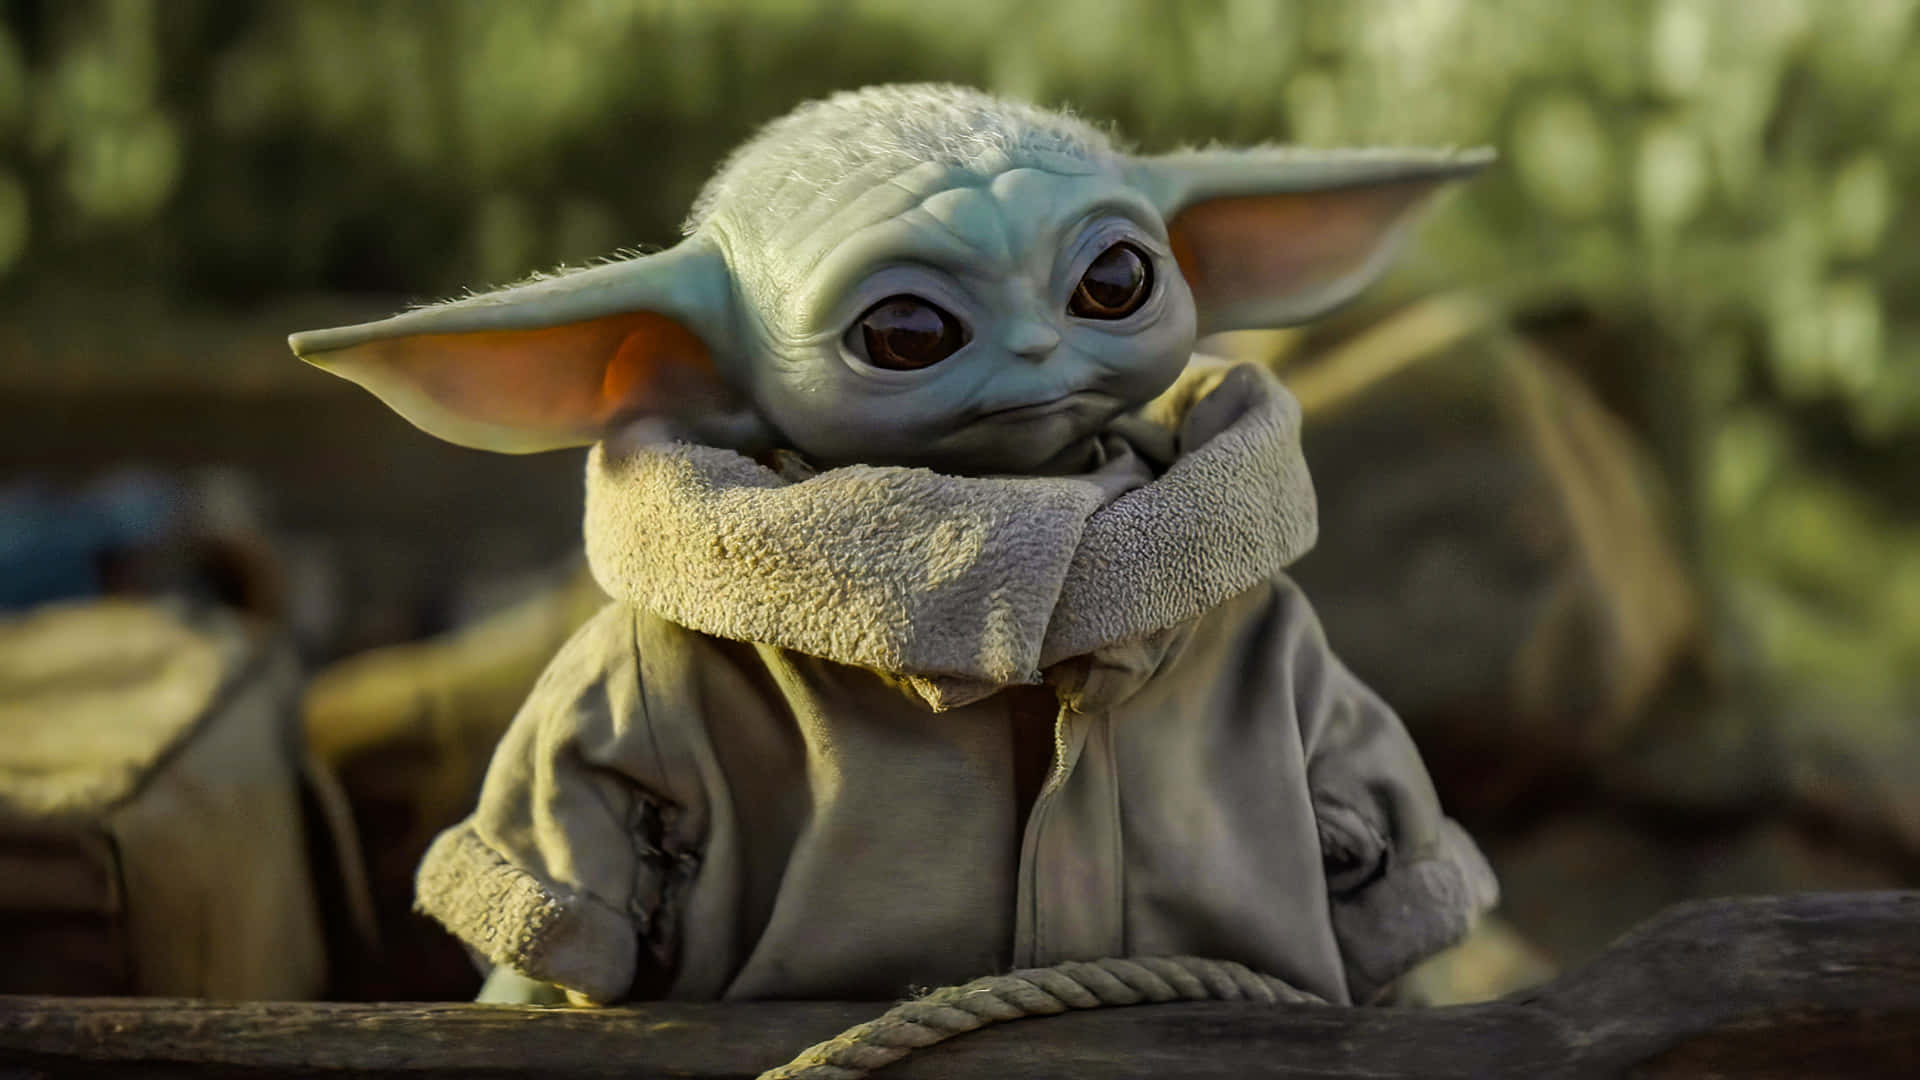 Opdagden Søde Baby Yoda.